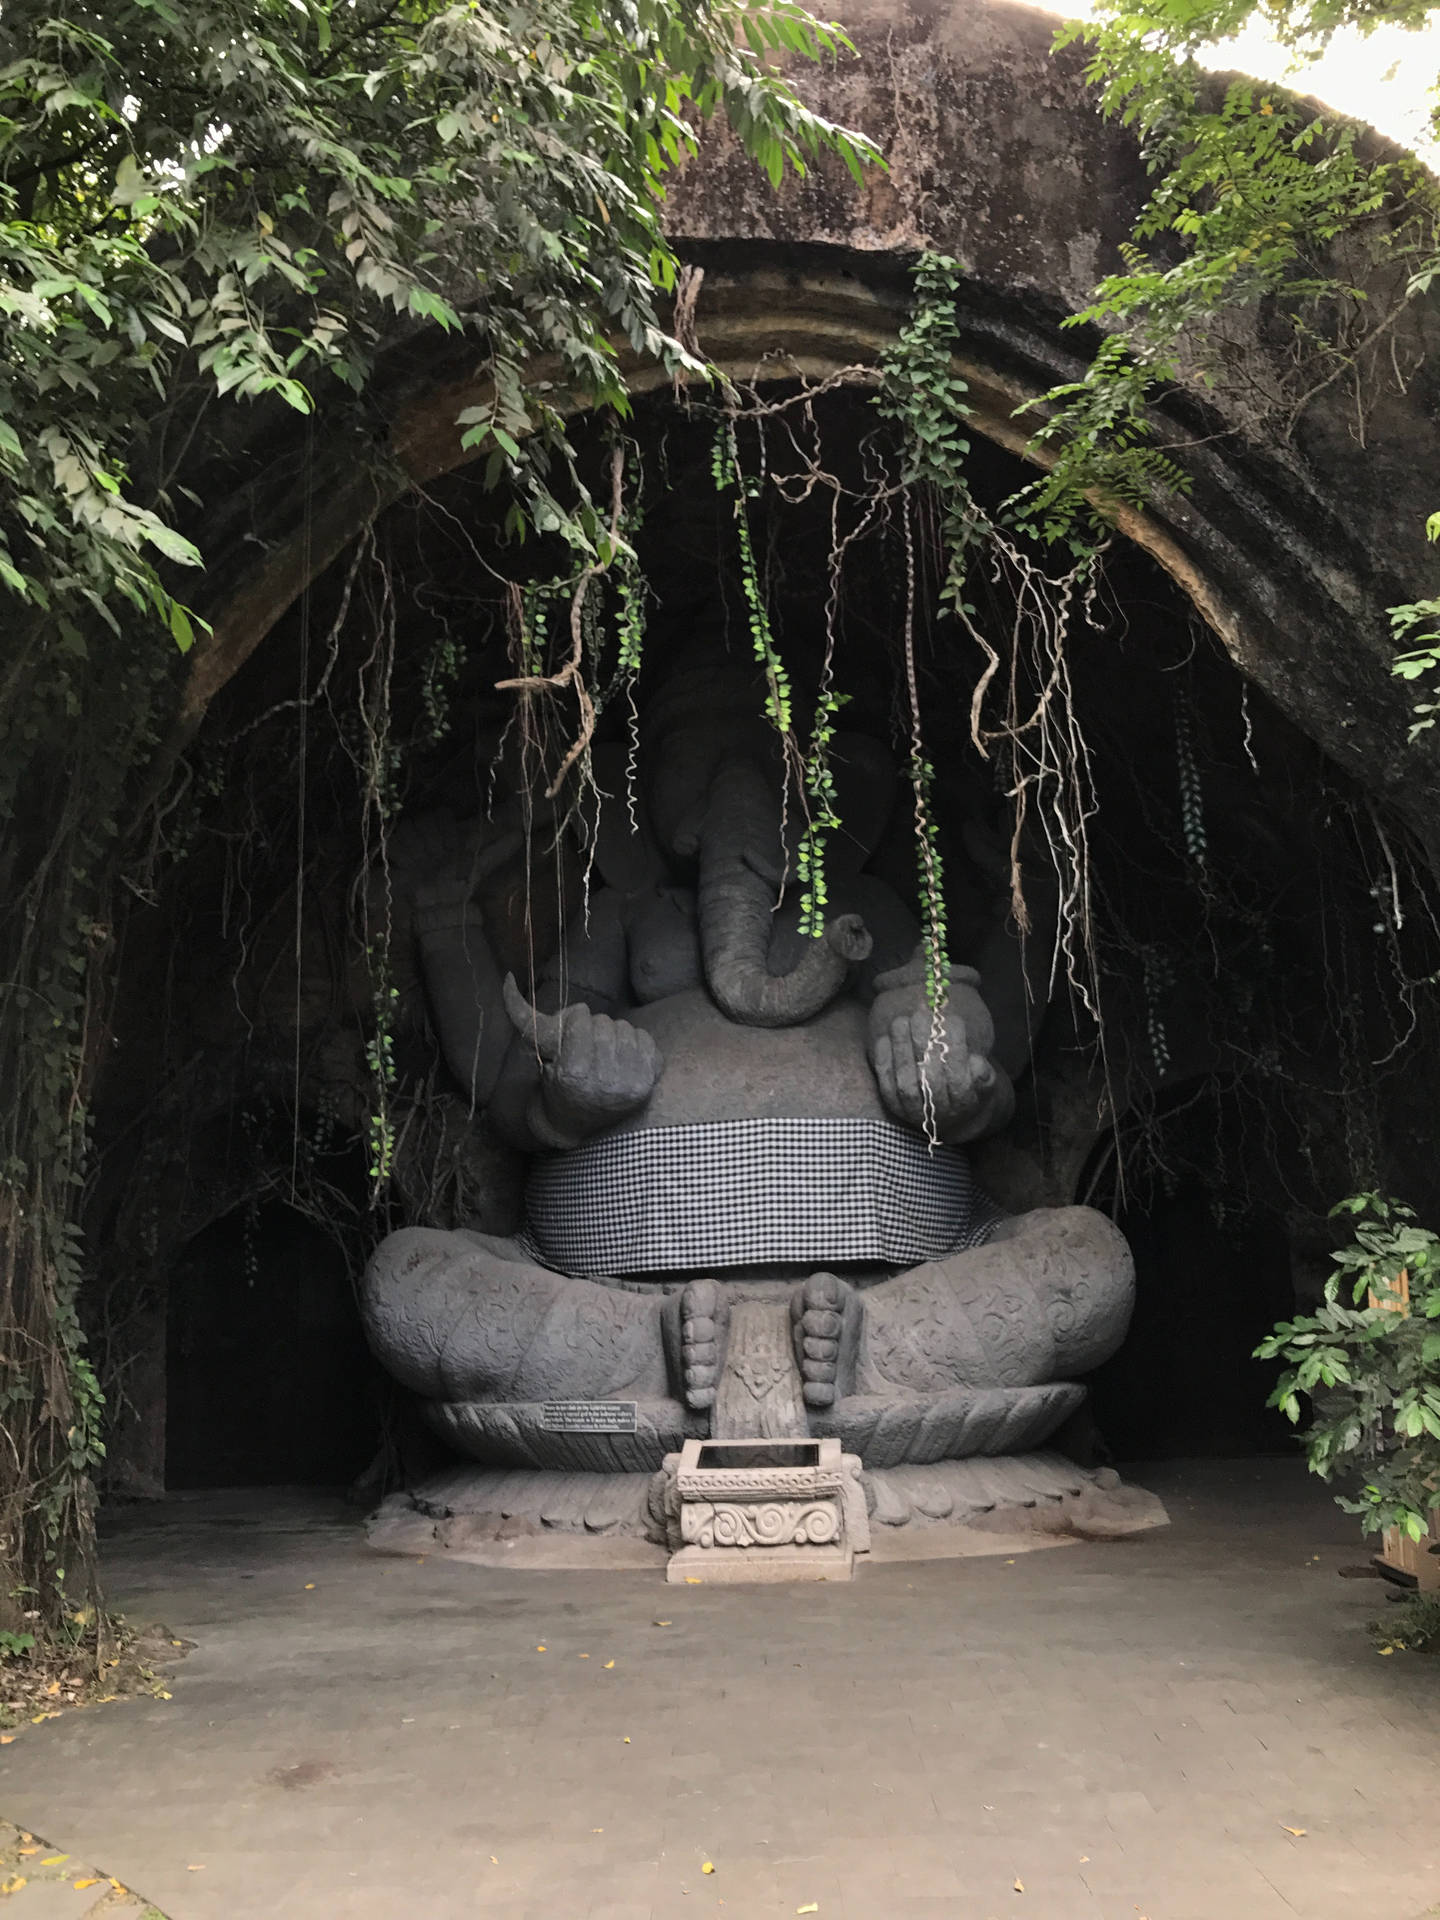 Ganesh 4k In Bali